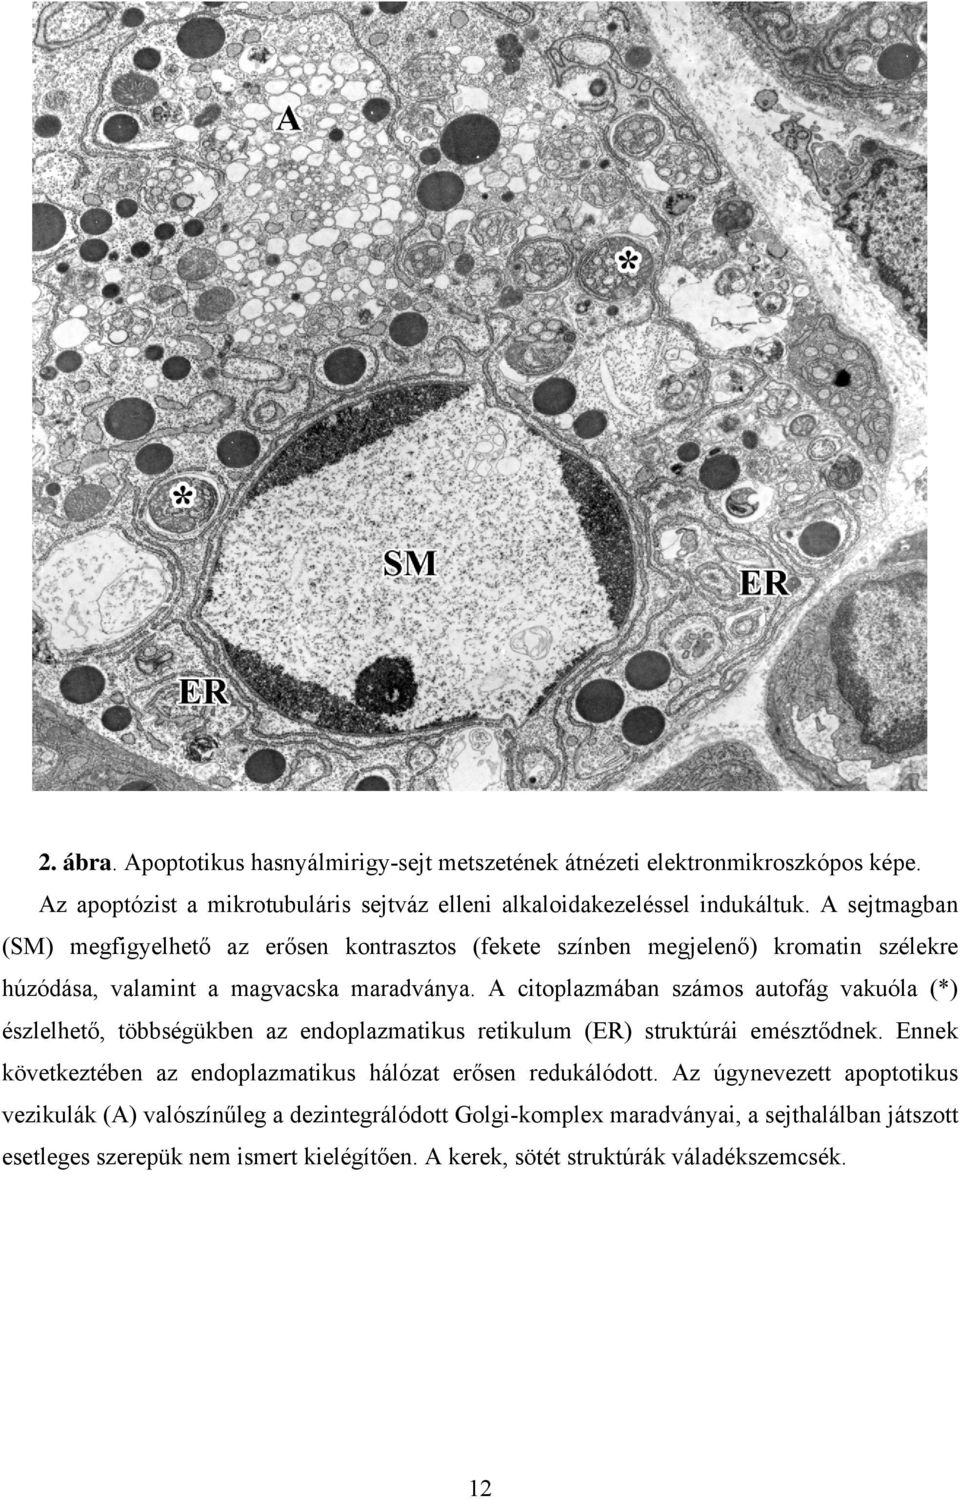 A citoplazmában számos autofág vakuóla (*) észlelhető, többségükben az endoplazmatikus retikulum (ER) struktúrái emésztődnek.